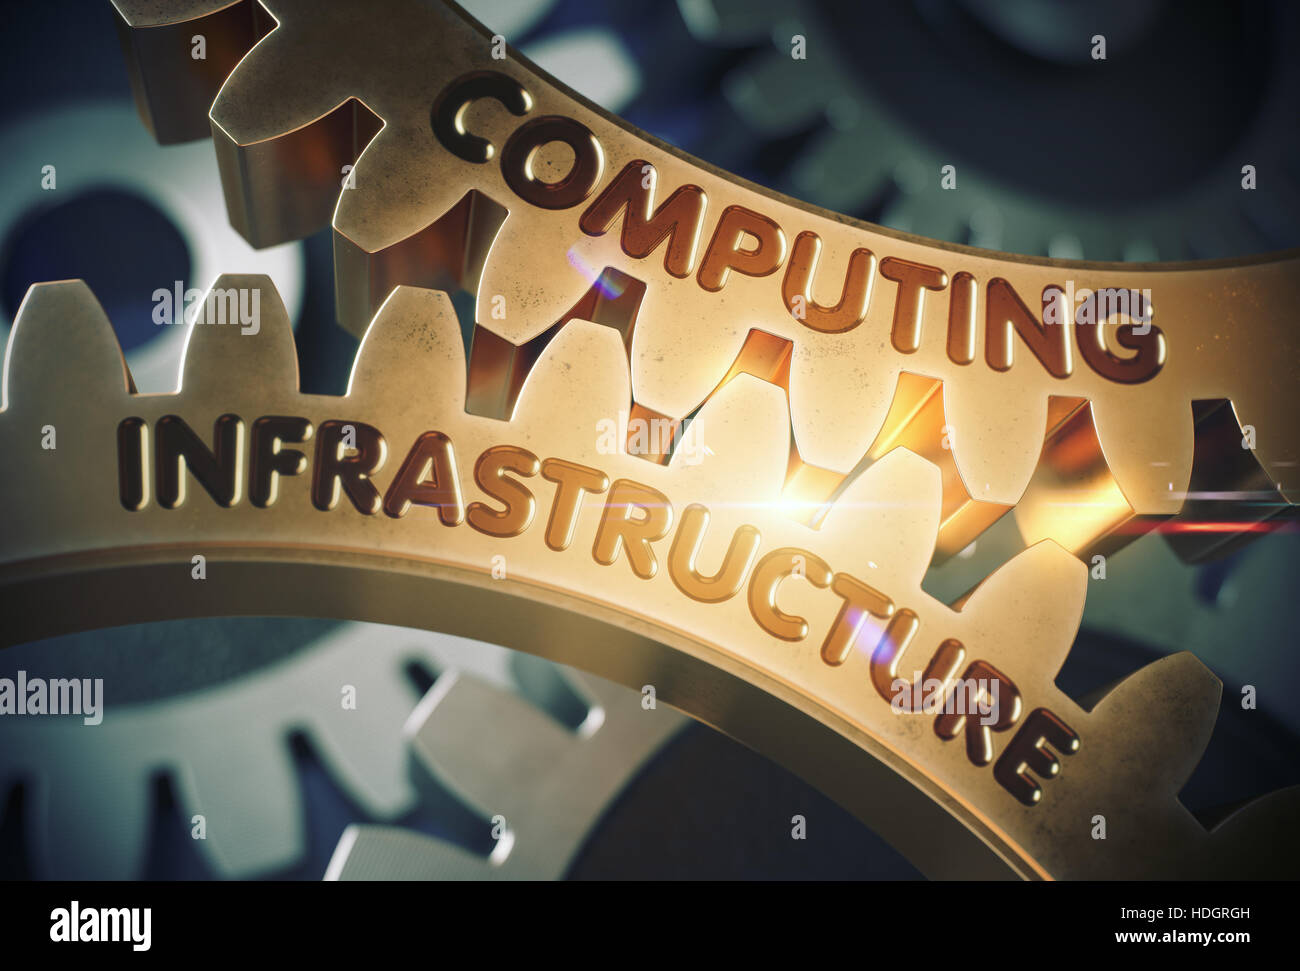 Computing-Infrastruktur am Mechanismus der goldene metallische Zahnräder mit Leuchteffekt. Goldene Zahnräder mit Computing-Infrastruktur-Konzept. 3D-Rendering. Stockfoto